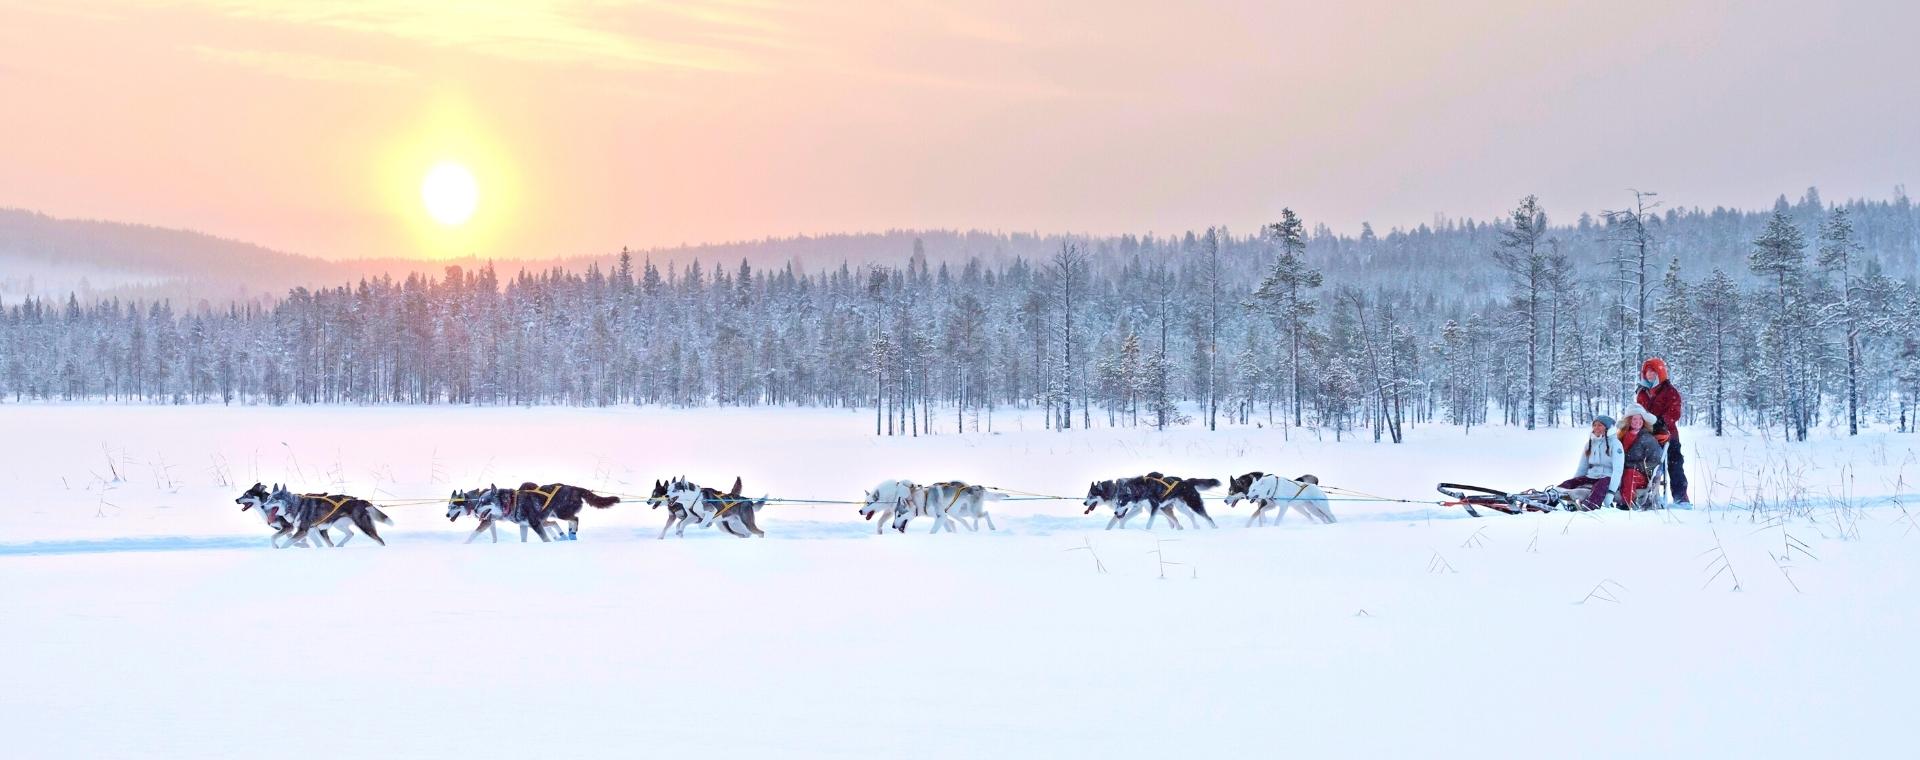 Voyage à la neige : Vivre la Laponie Suédoise